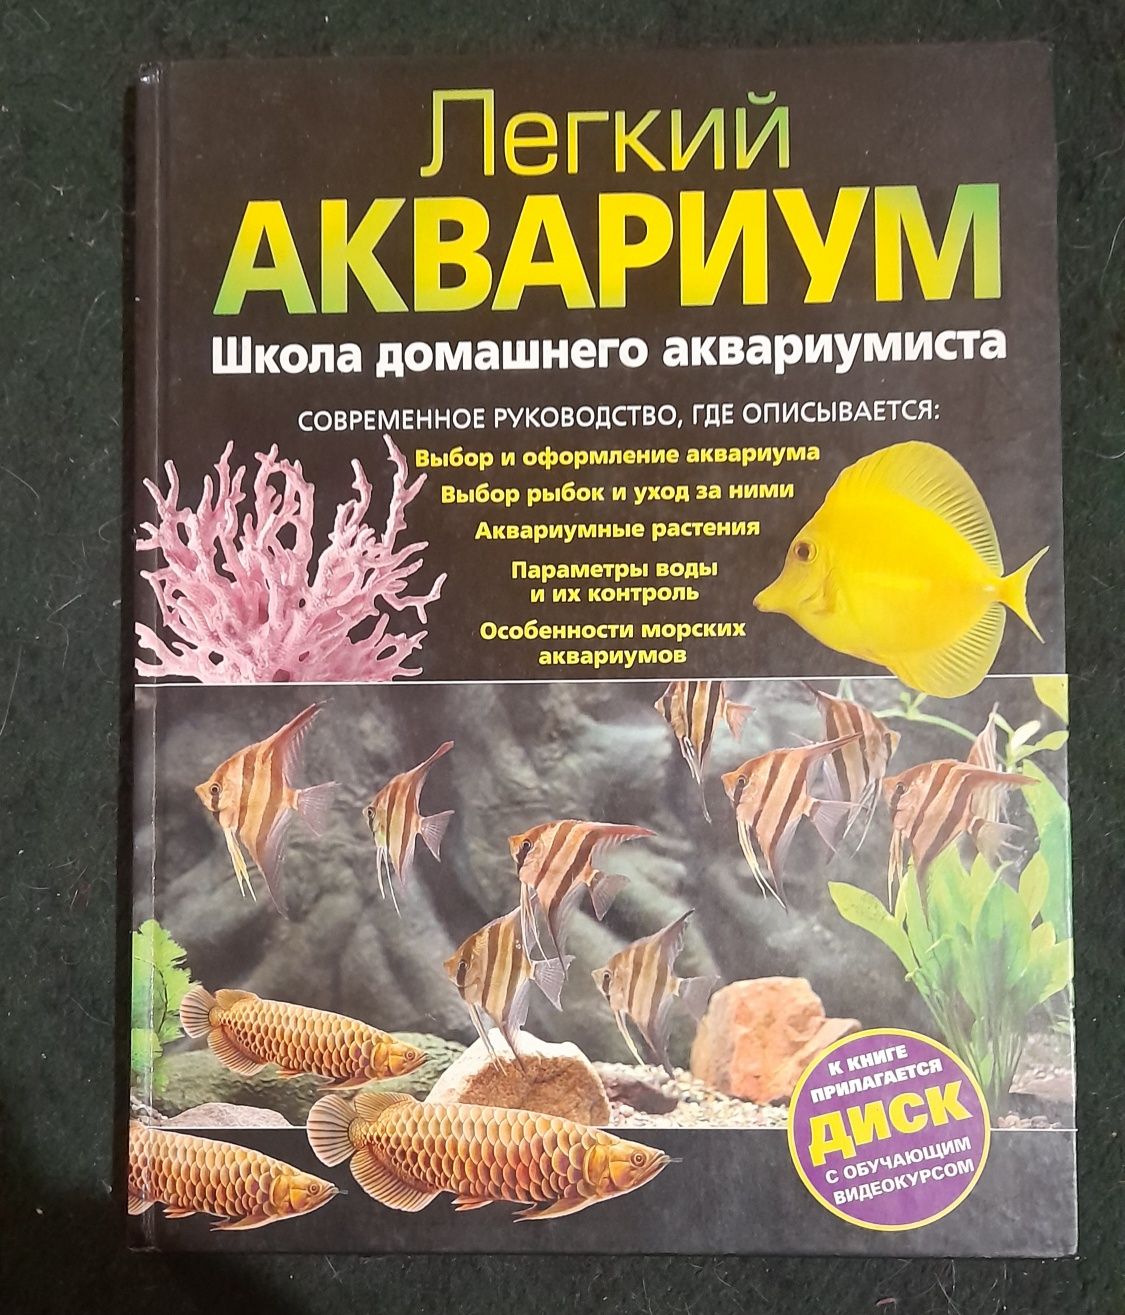 Книги про аквариум и разведение рыб.